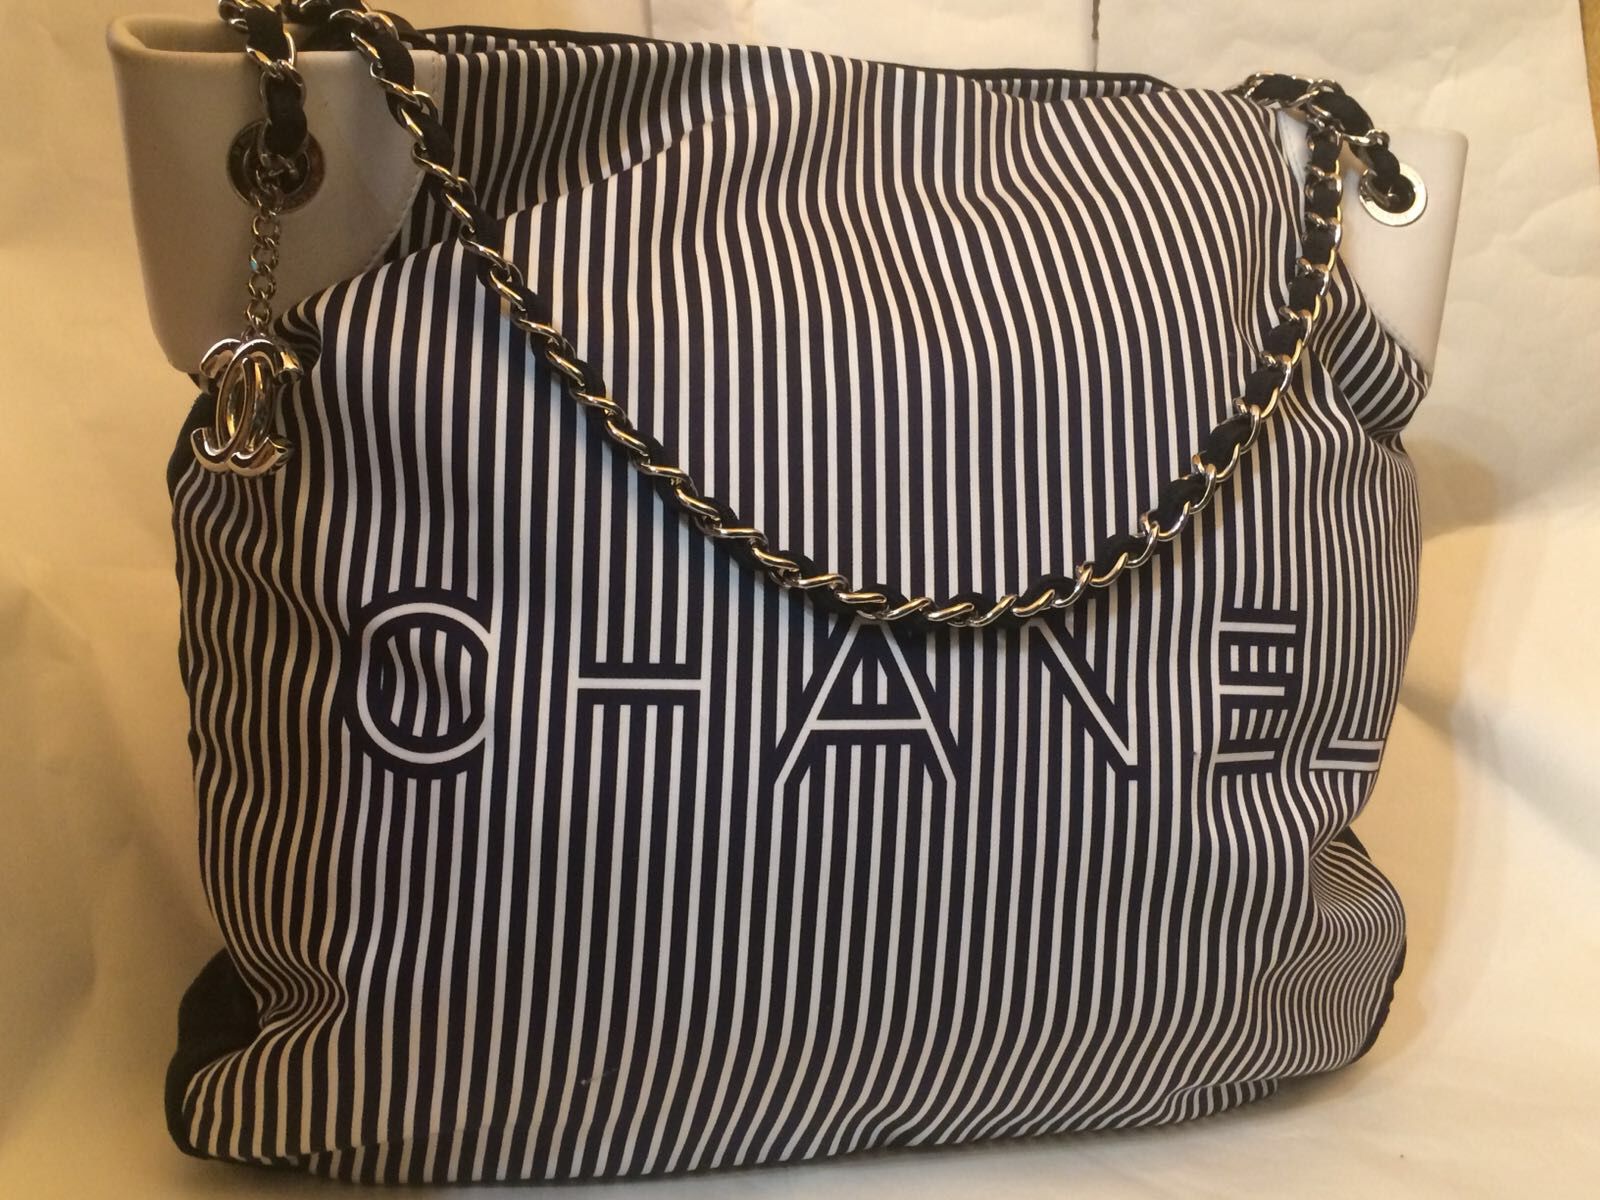 Vintage Chanel bag